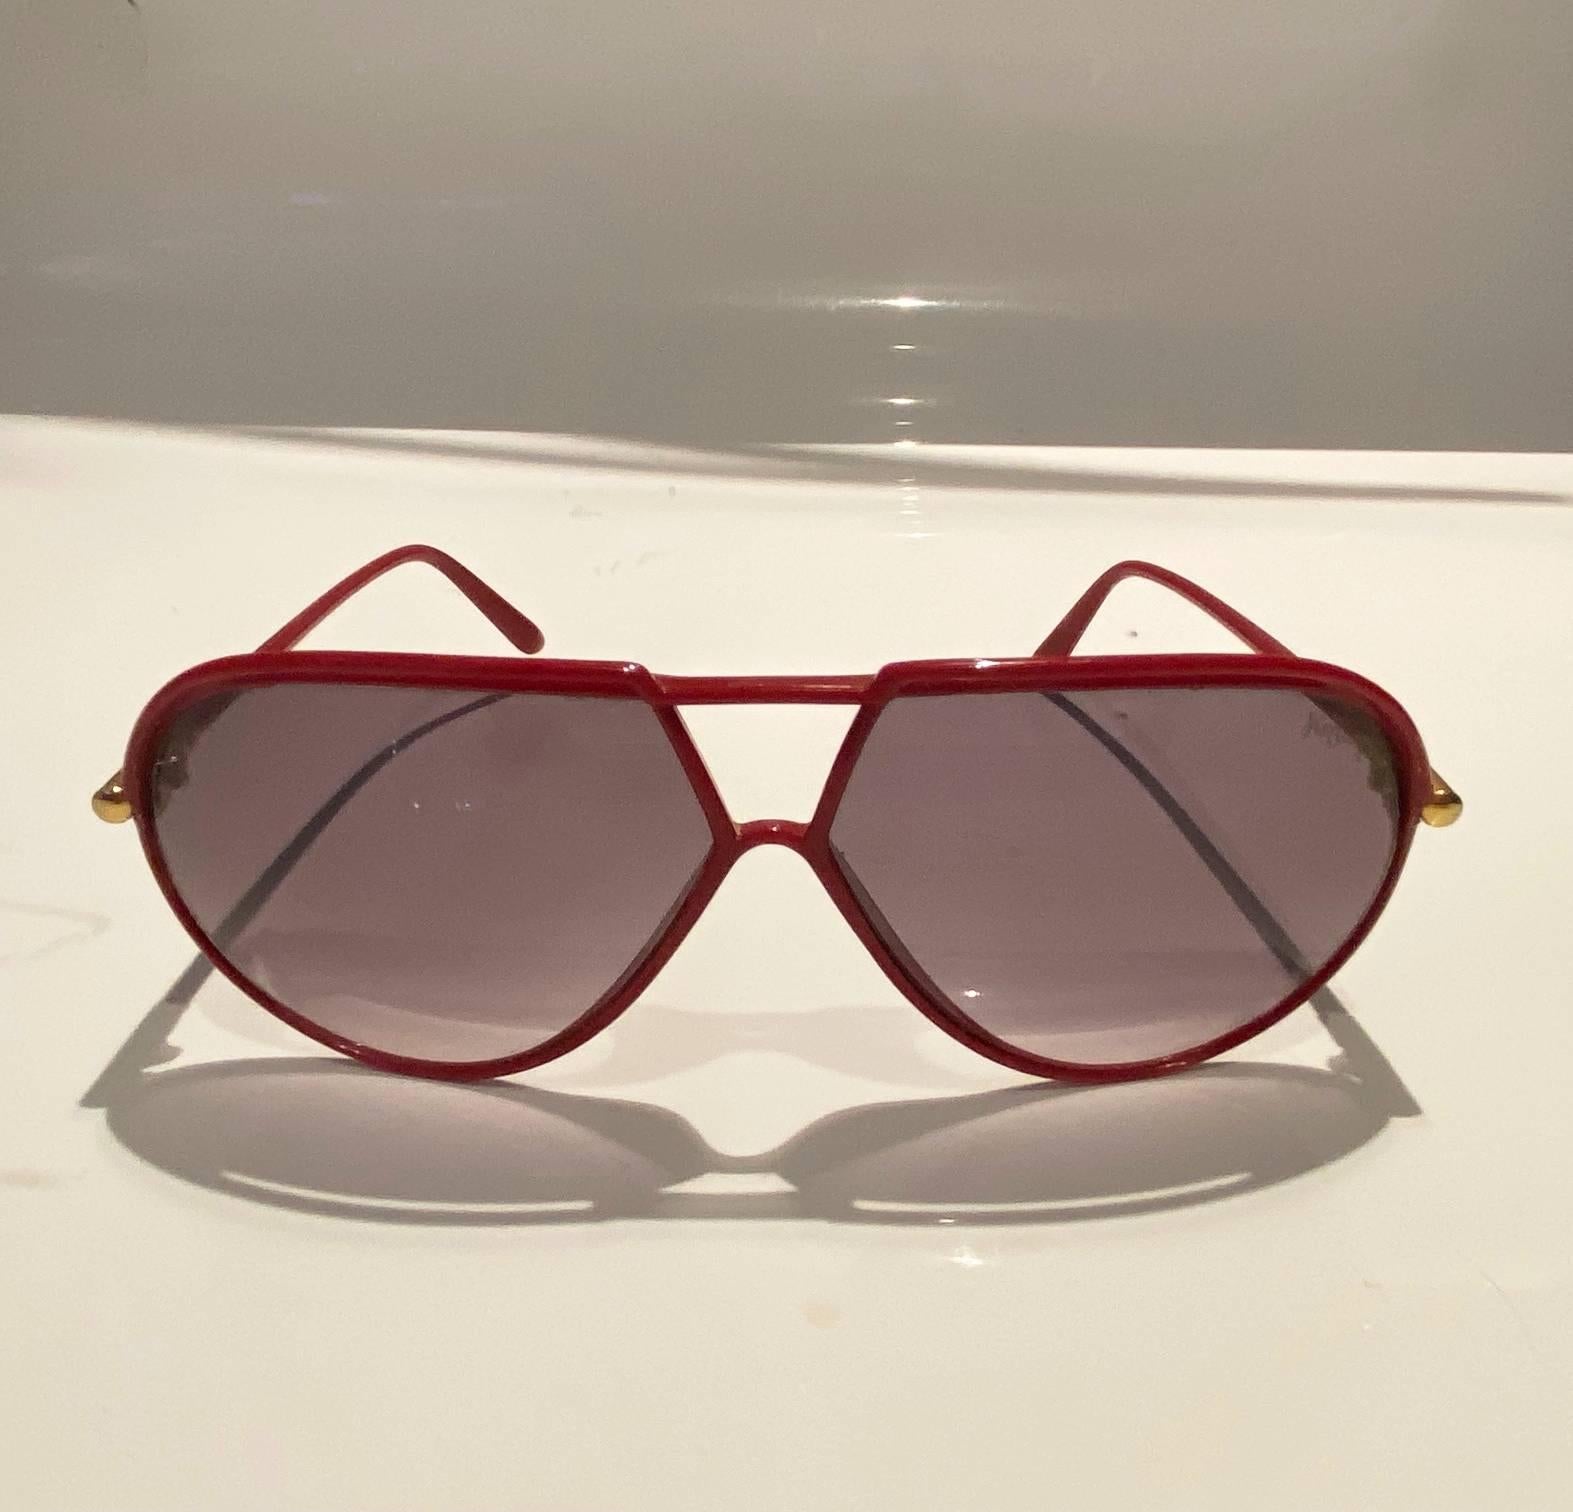 Yves Saint Laurent Rote Teardrop-Sonnenbrille, roter Kunststoffrahmen, braune Gläser, goldfarbene Metallteile, Logoplakette am Bügel 

Zustand: 1980er Jahre, sehr gut, keine Originalverpackung 

Abmessungen: 
- gesamtbreite: 15cm/5.8in 
- abstand